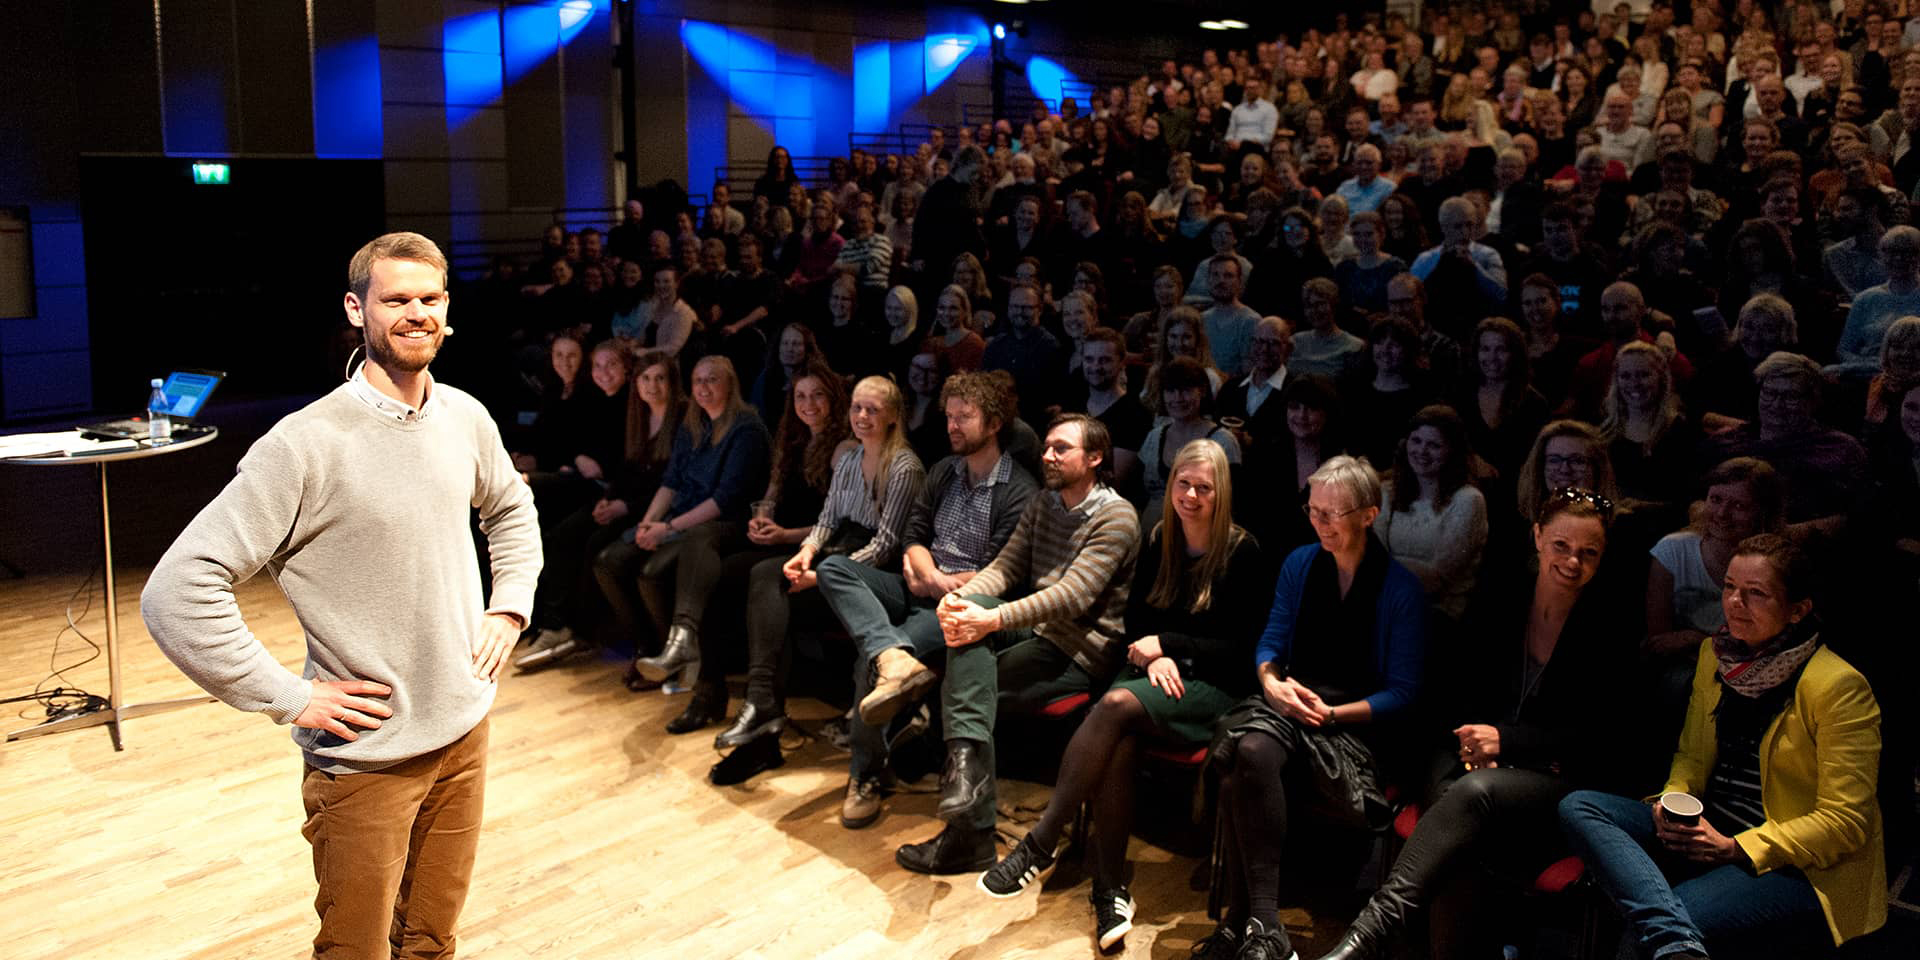 Billede af Svend Brinkmann foran et publikum i Musikhuset Aarhus, foredrag ved FOF Aarhus